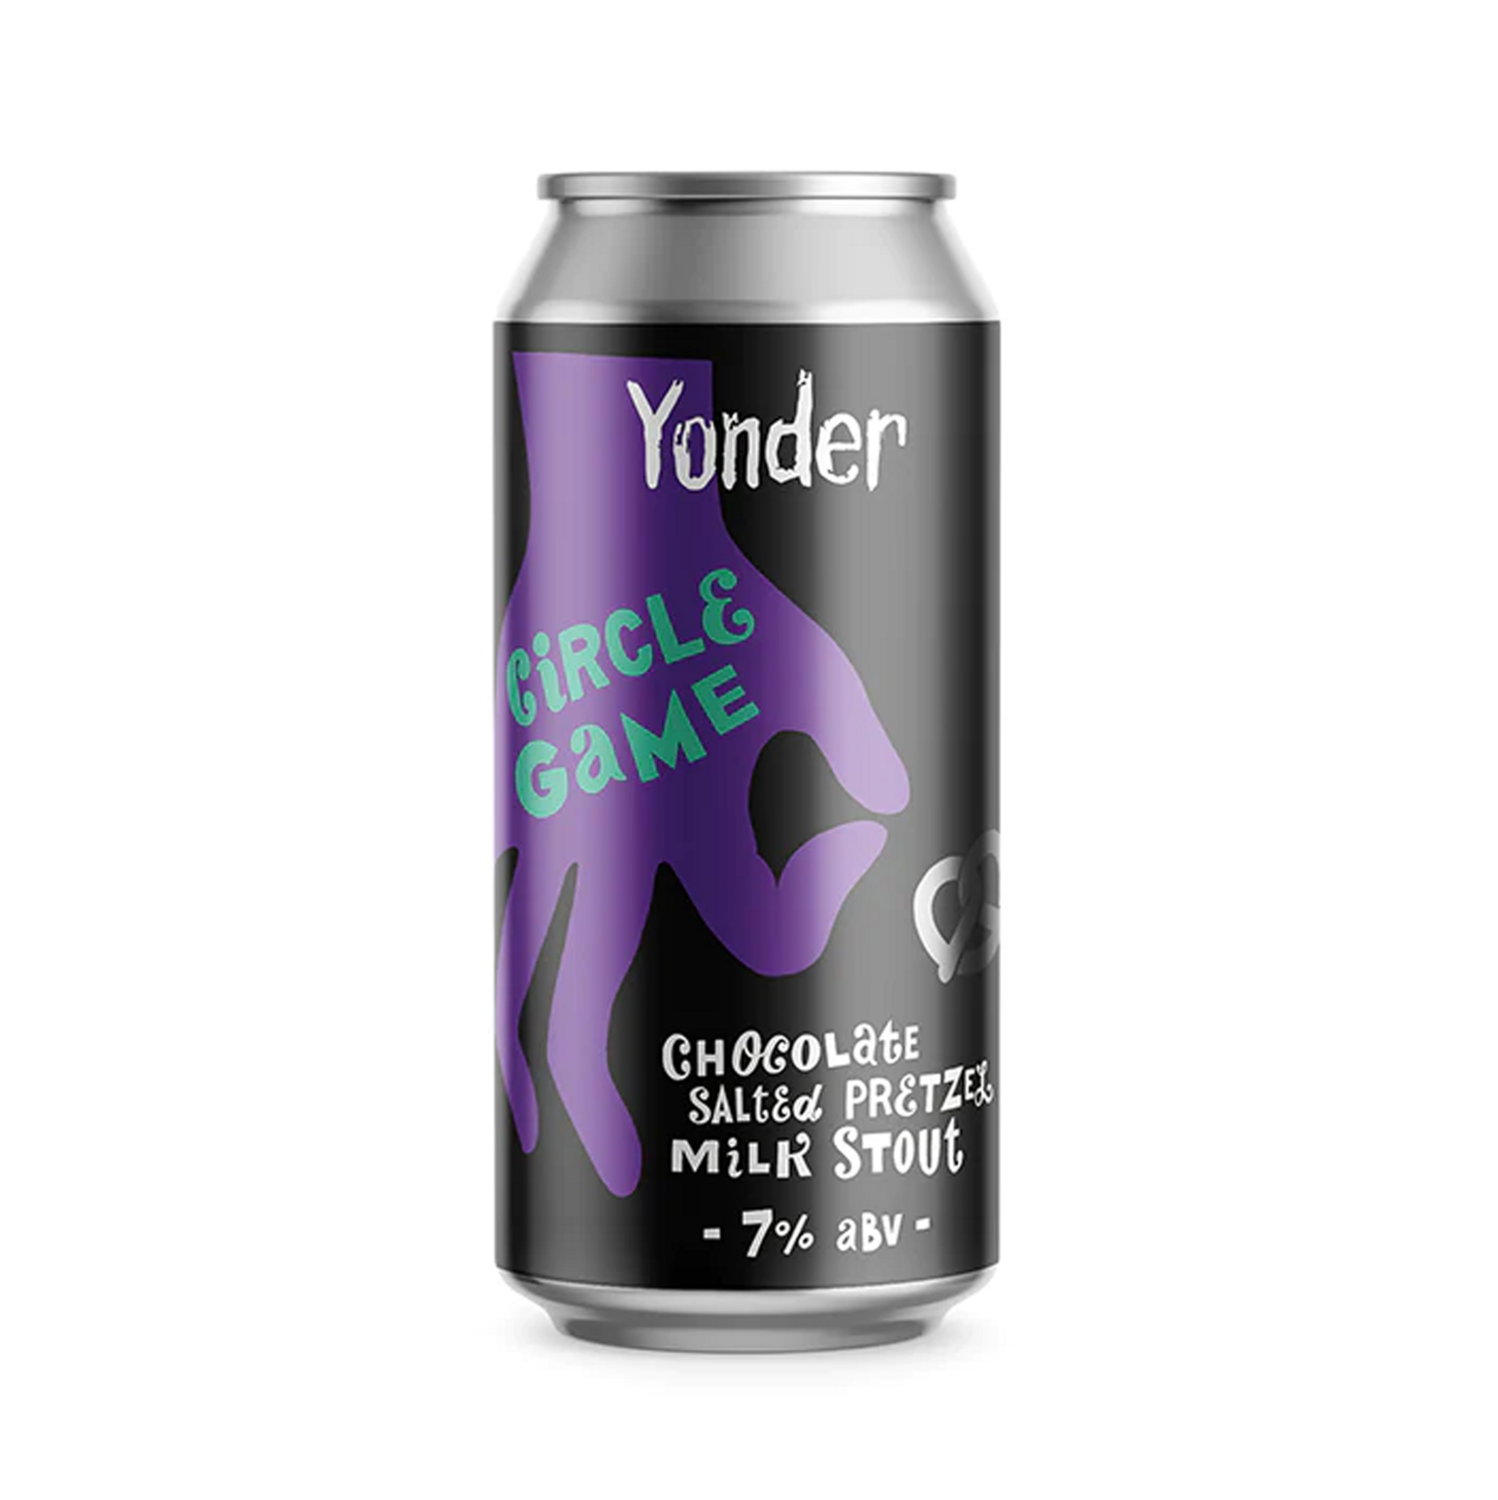 Yonder Circle Game Milk Stout